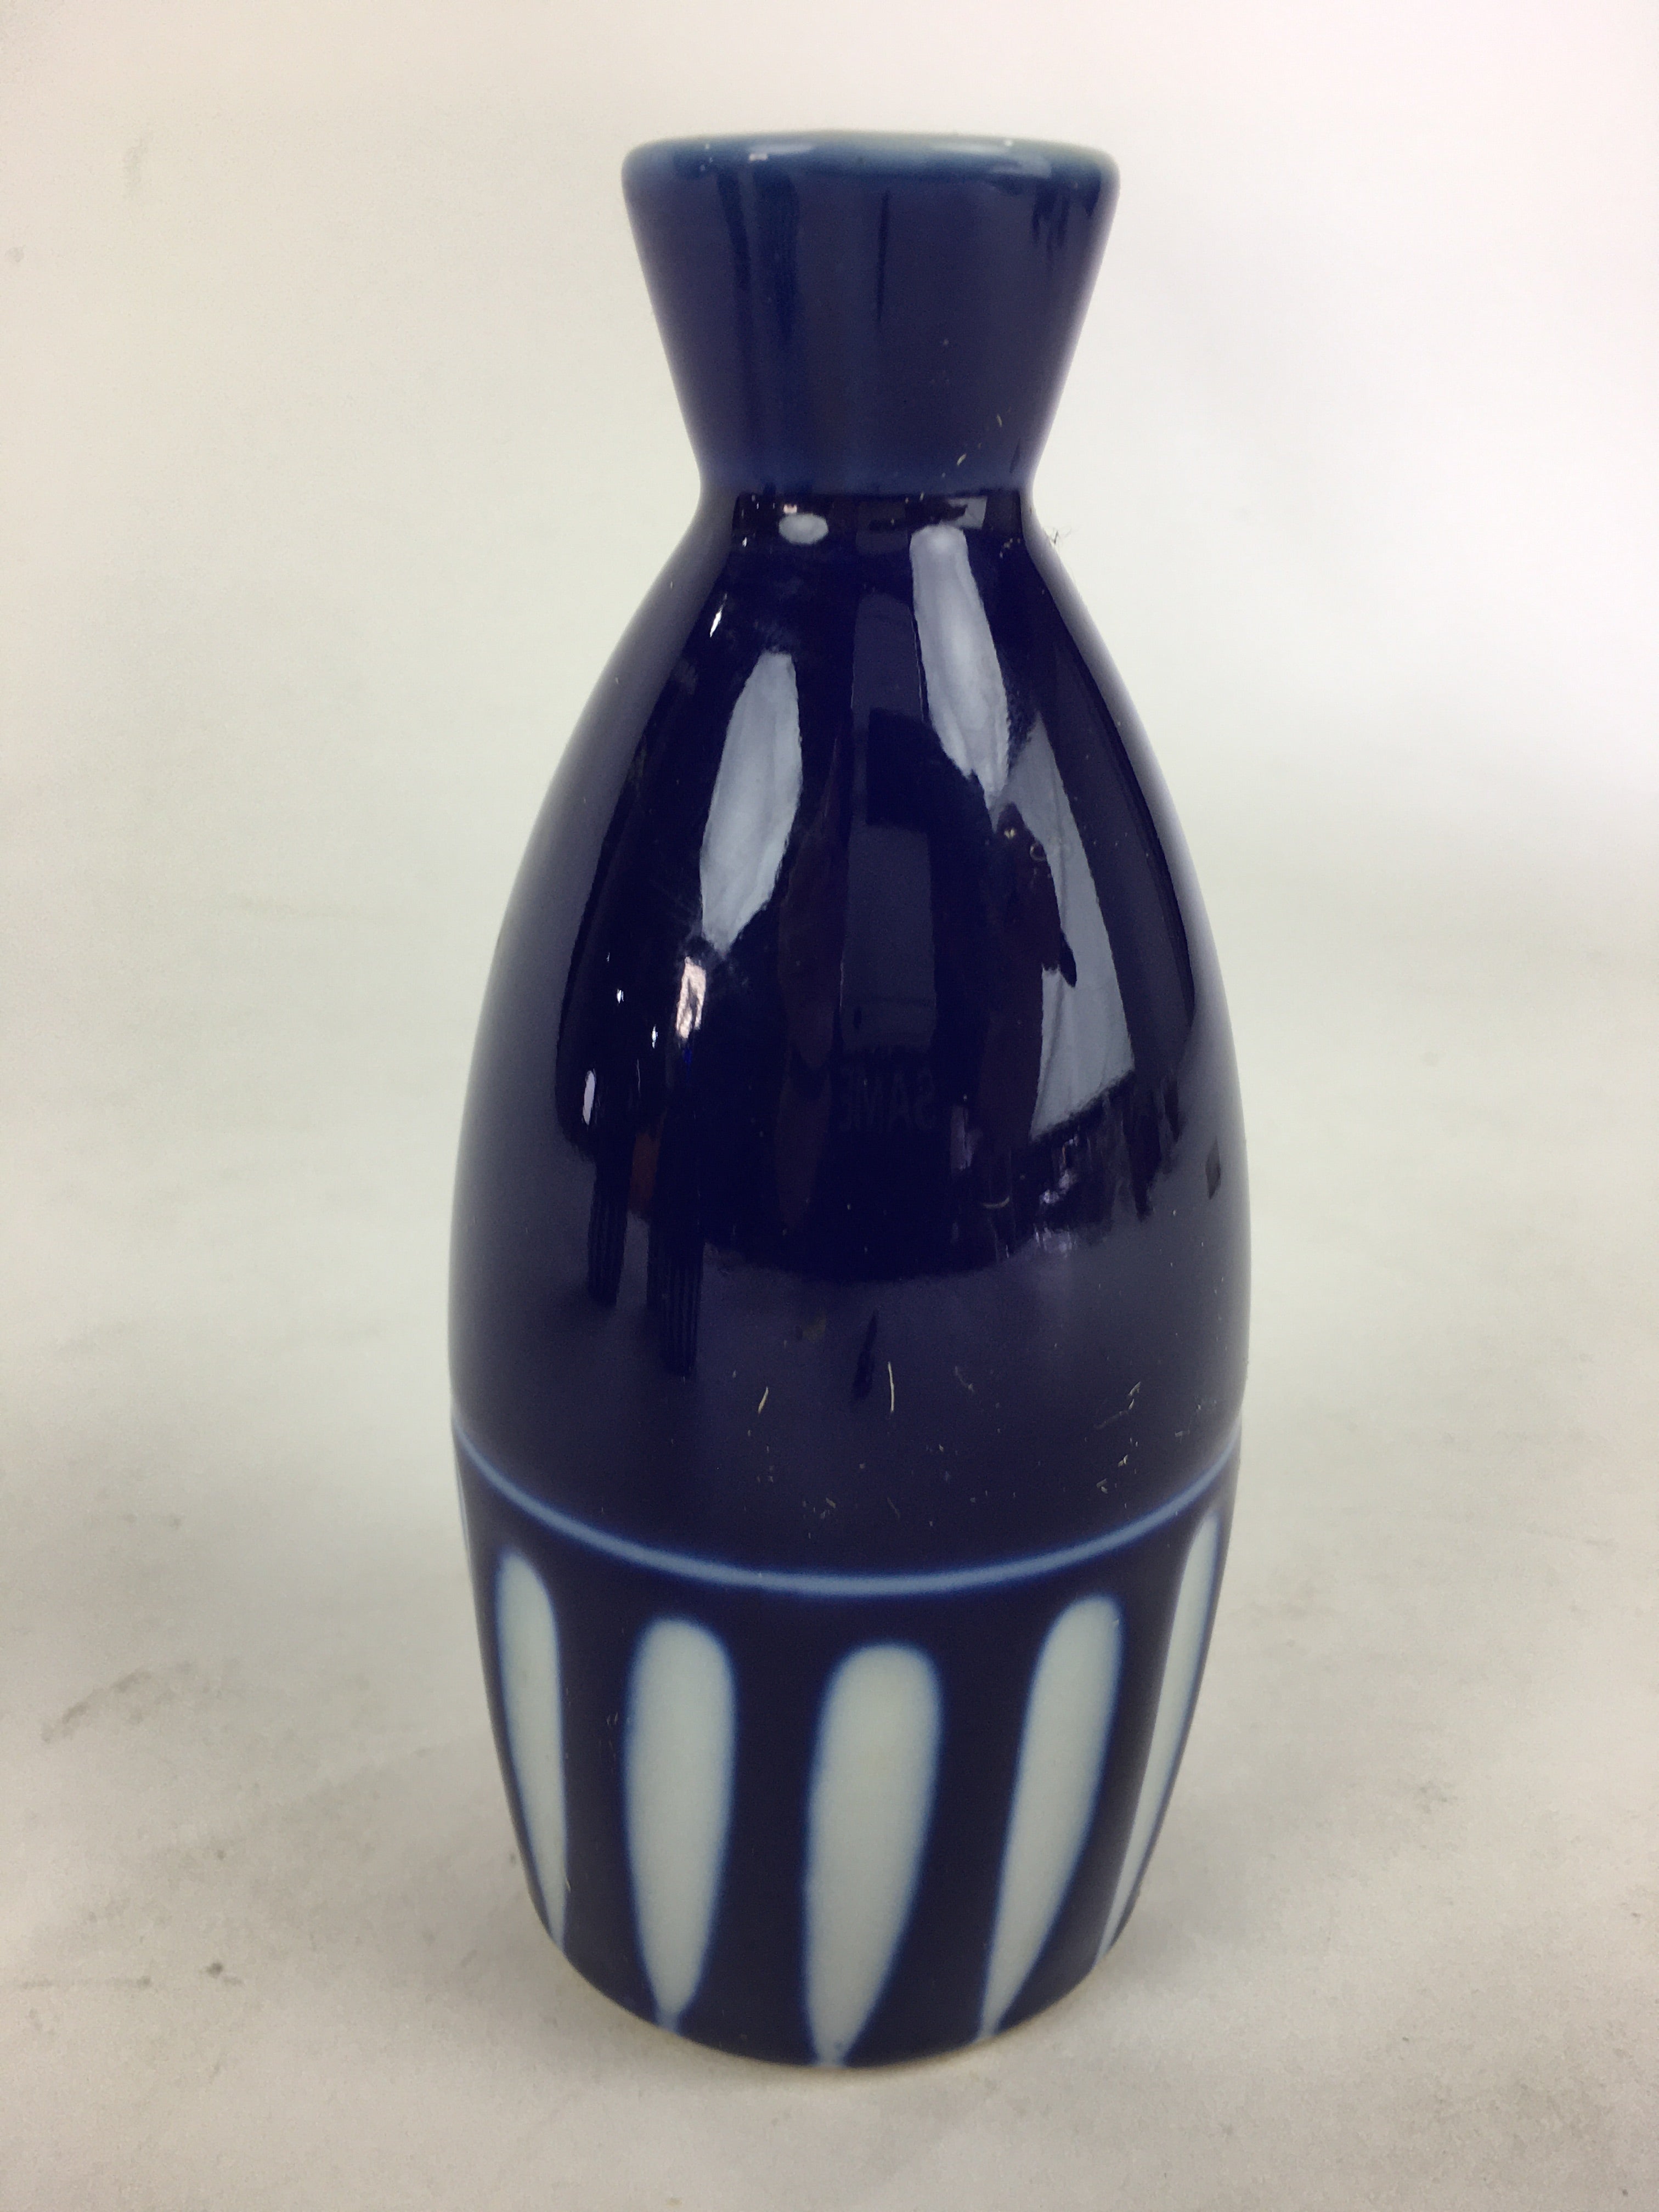 Japanese Porcelain Sake Bottle Vtg Blue White Shinogi Design Tokkuri TS353